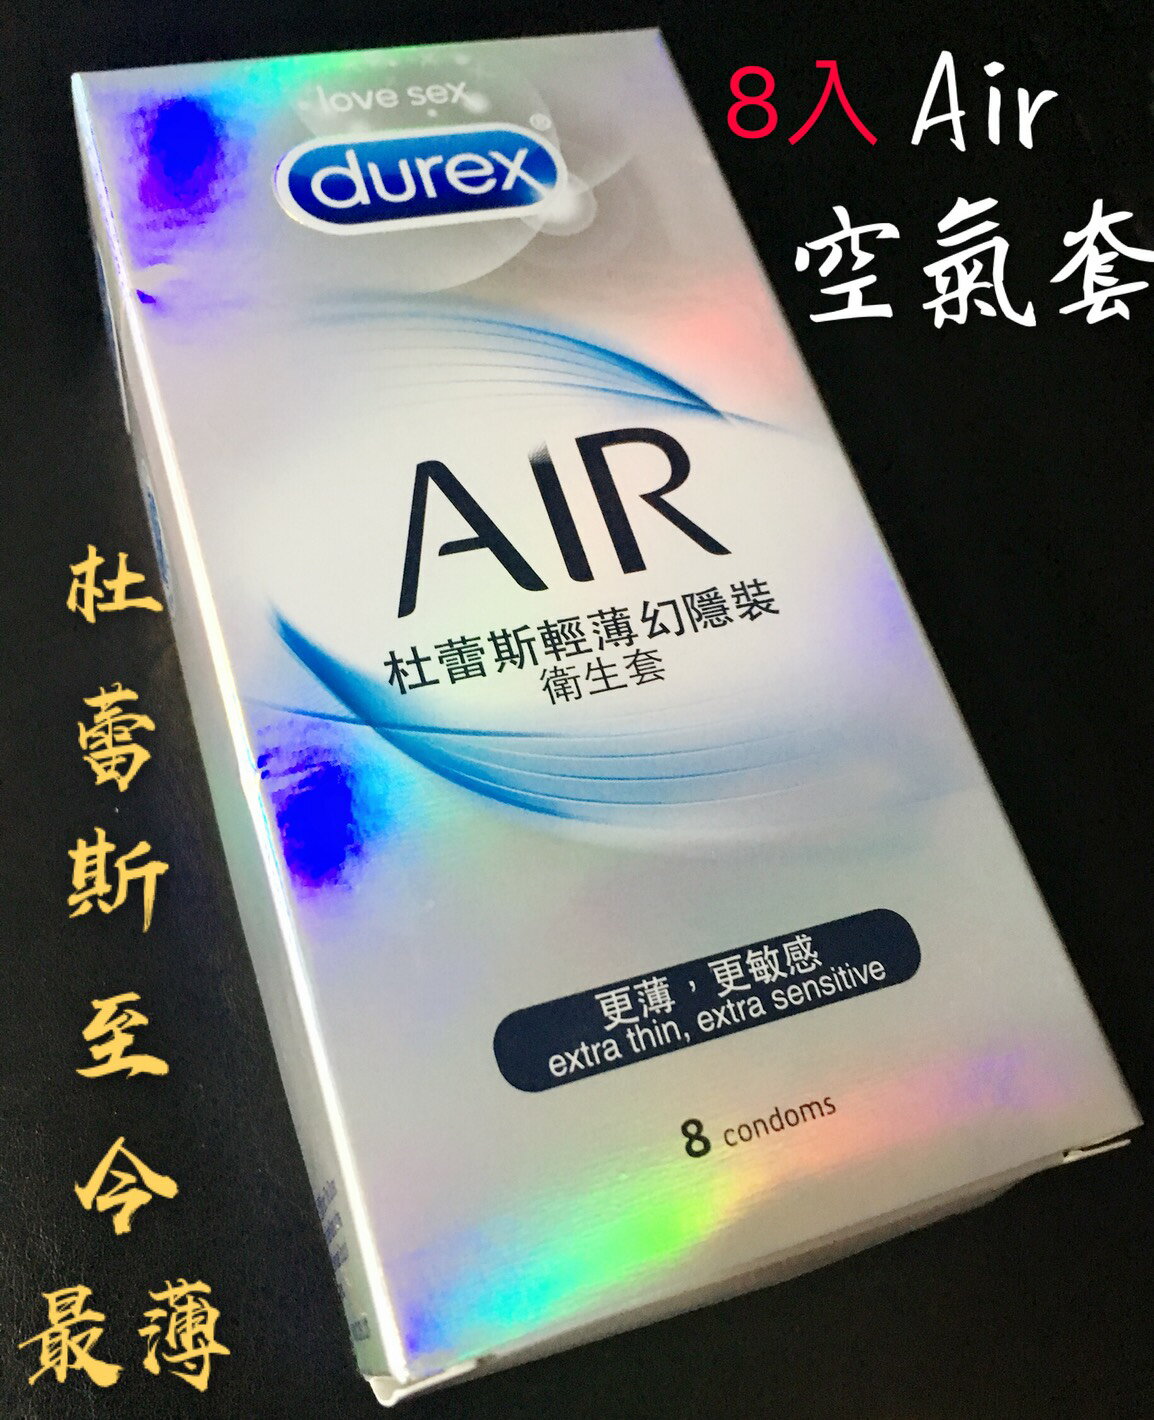 8入 Durex 杜蕾斯保險套 AIR輕薄幻隱裝保險套 衛生套 避孕套 空氣套